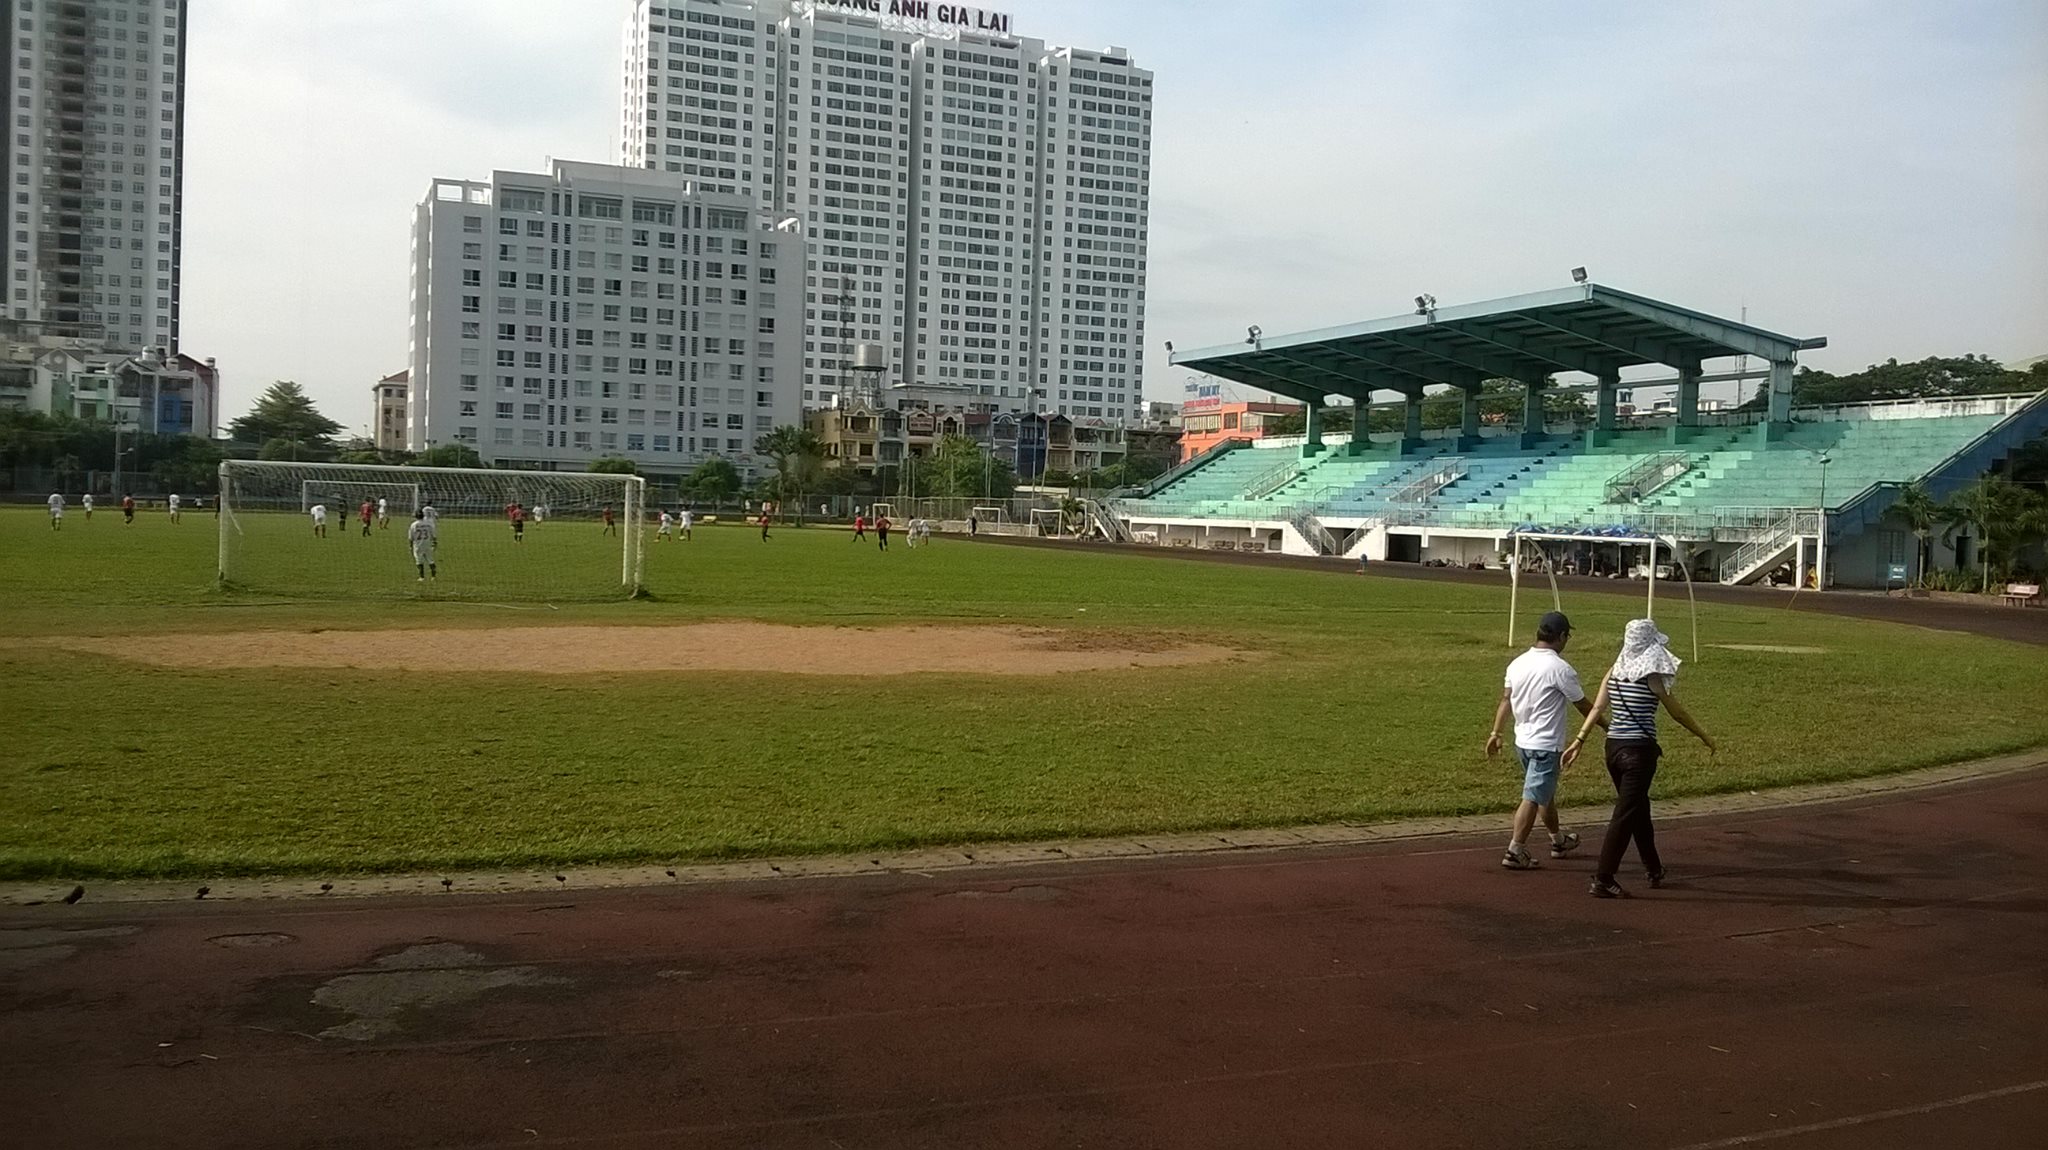 Sân Futsal ở nhà thi đấu Thái Sơn Nam